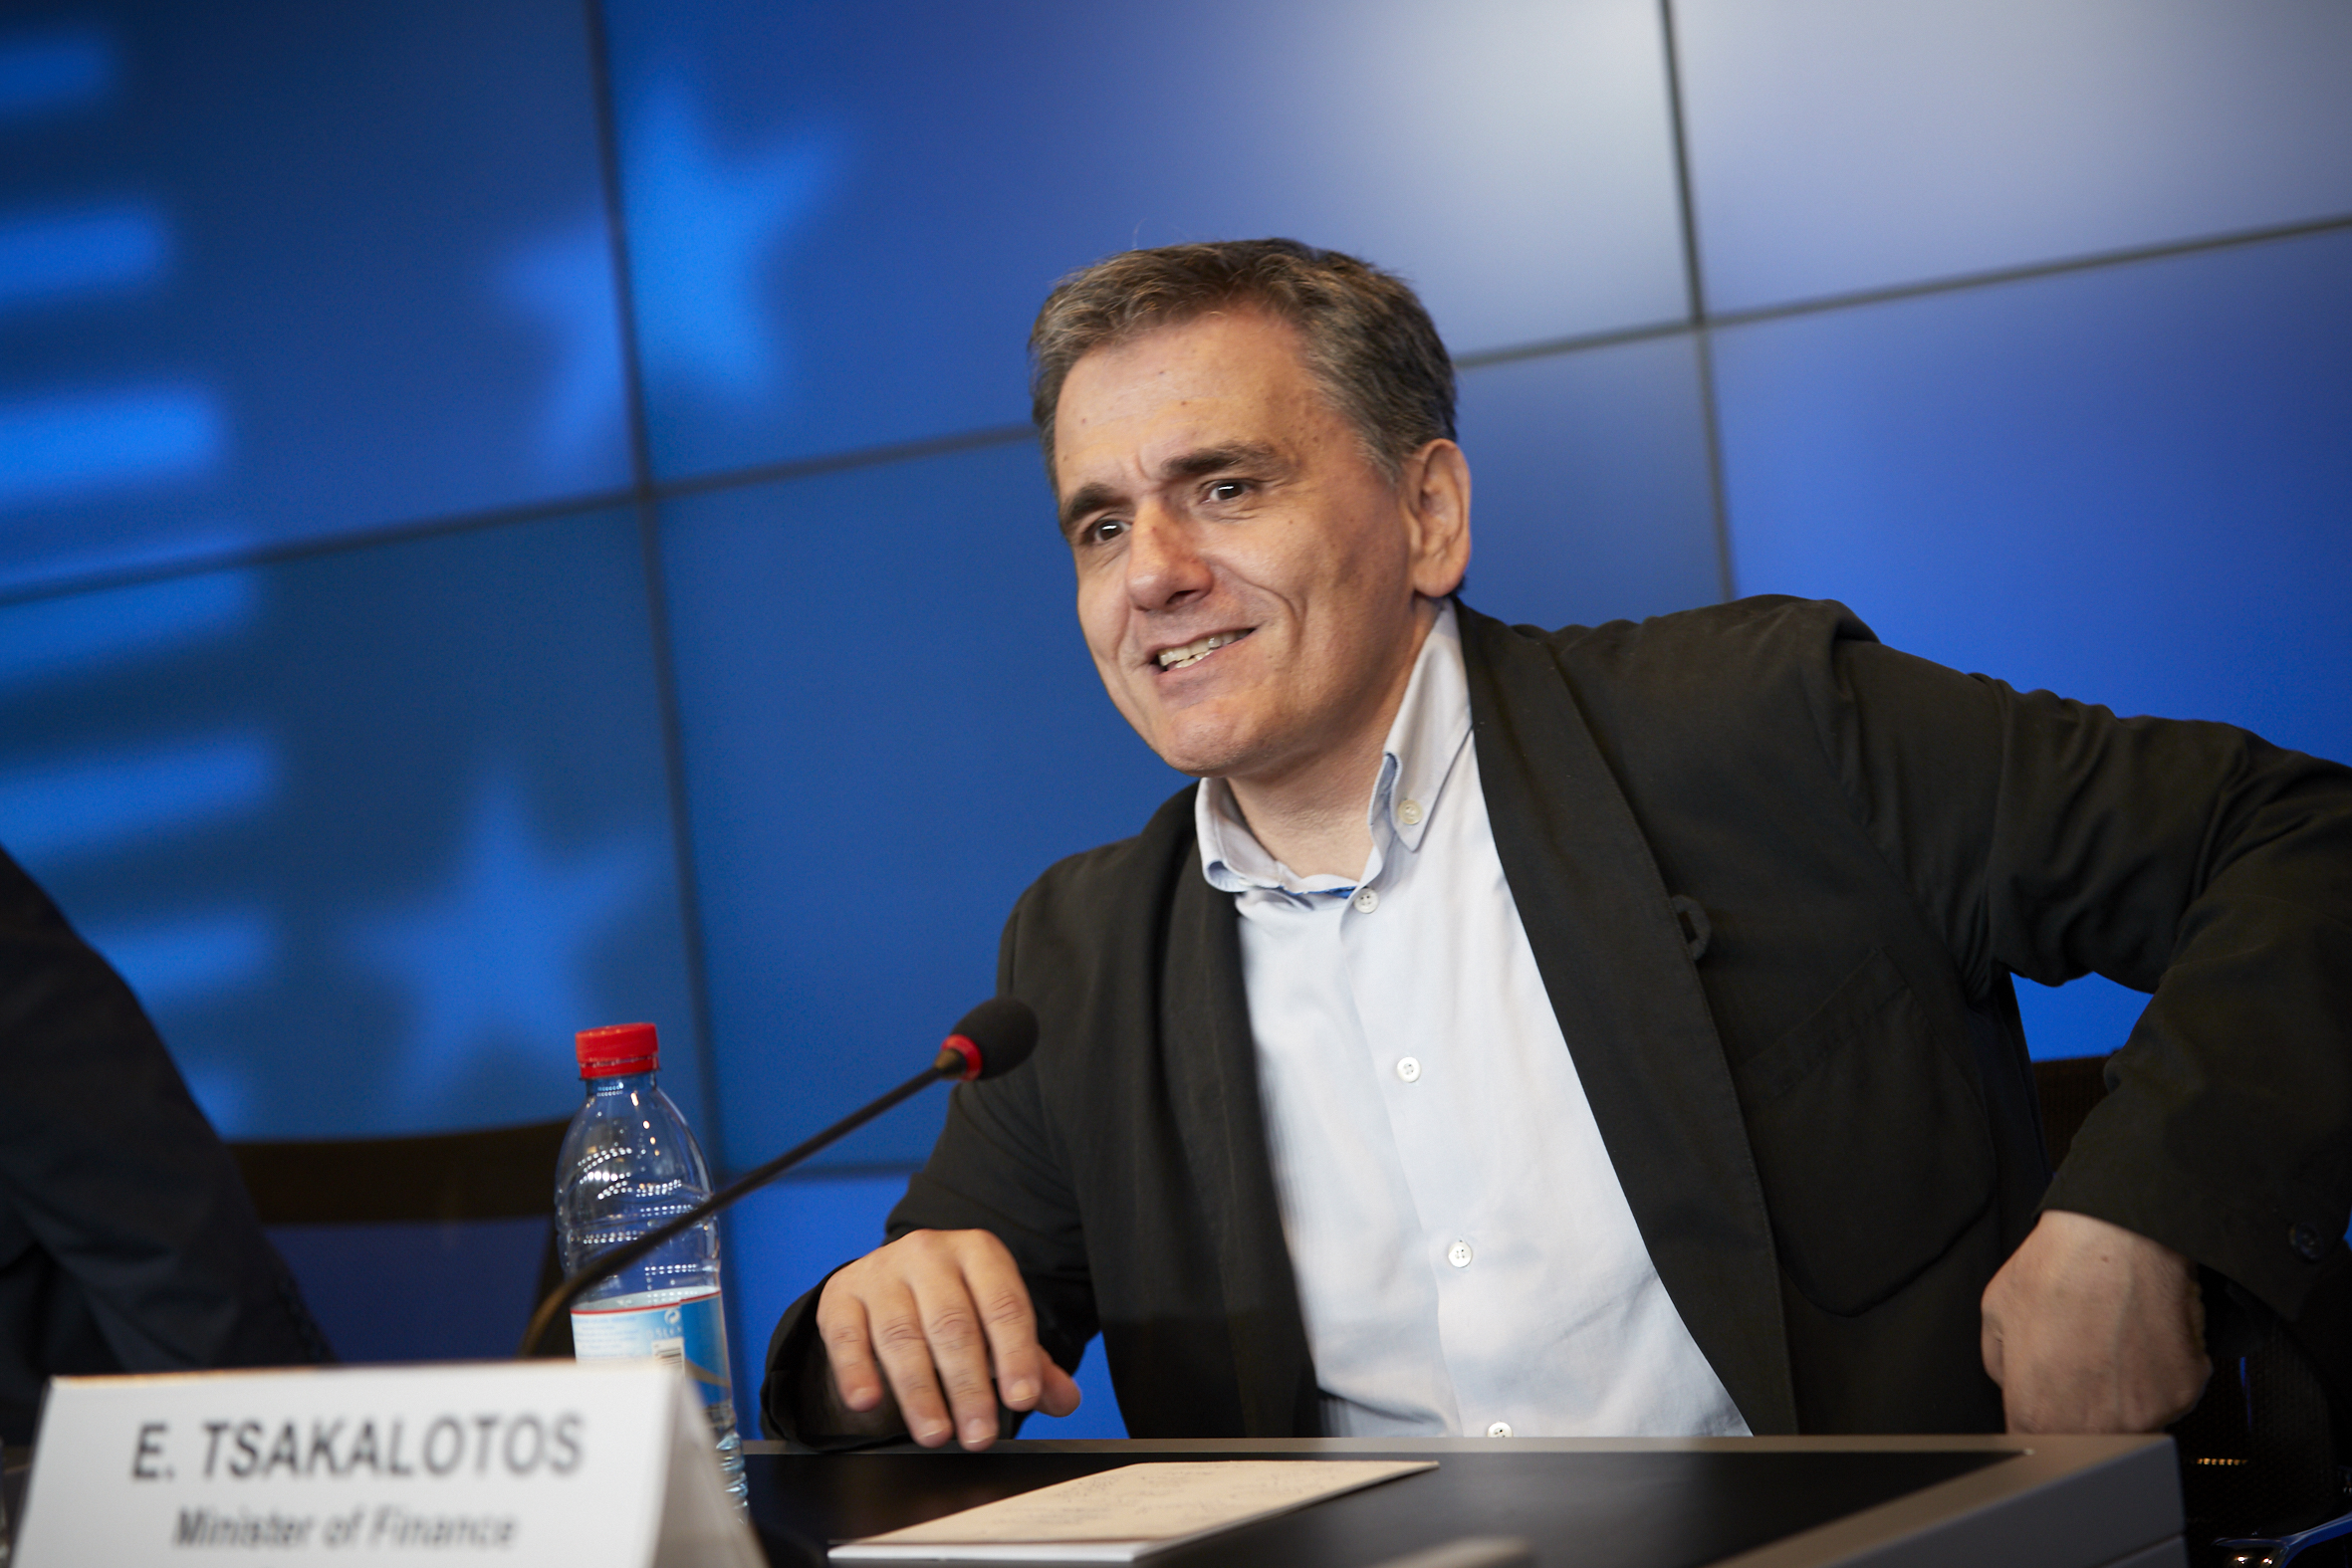 Σε τι δεσμεύτηκε η Ελλάδα στο Eurogroup έναντι των δανειστών